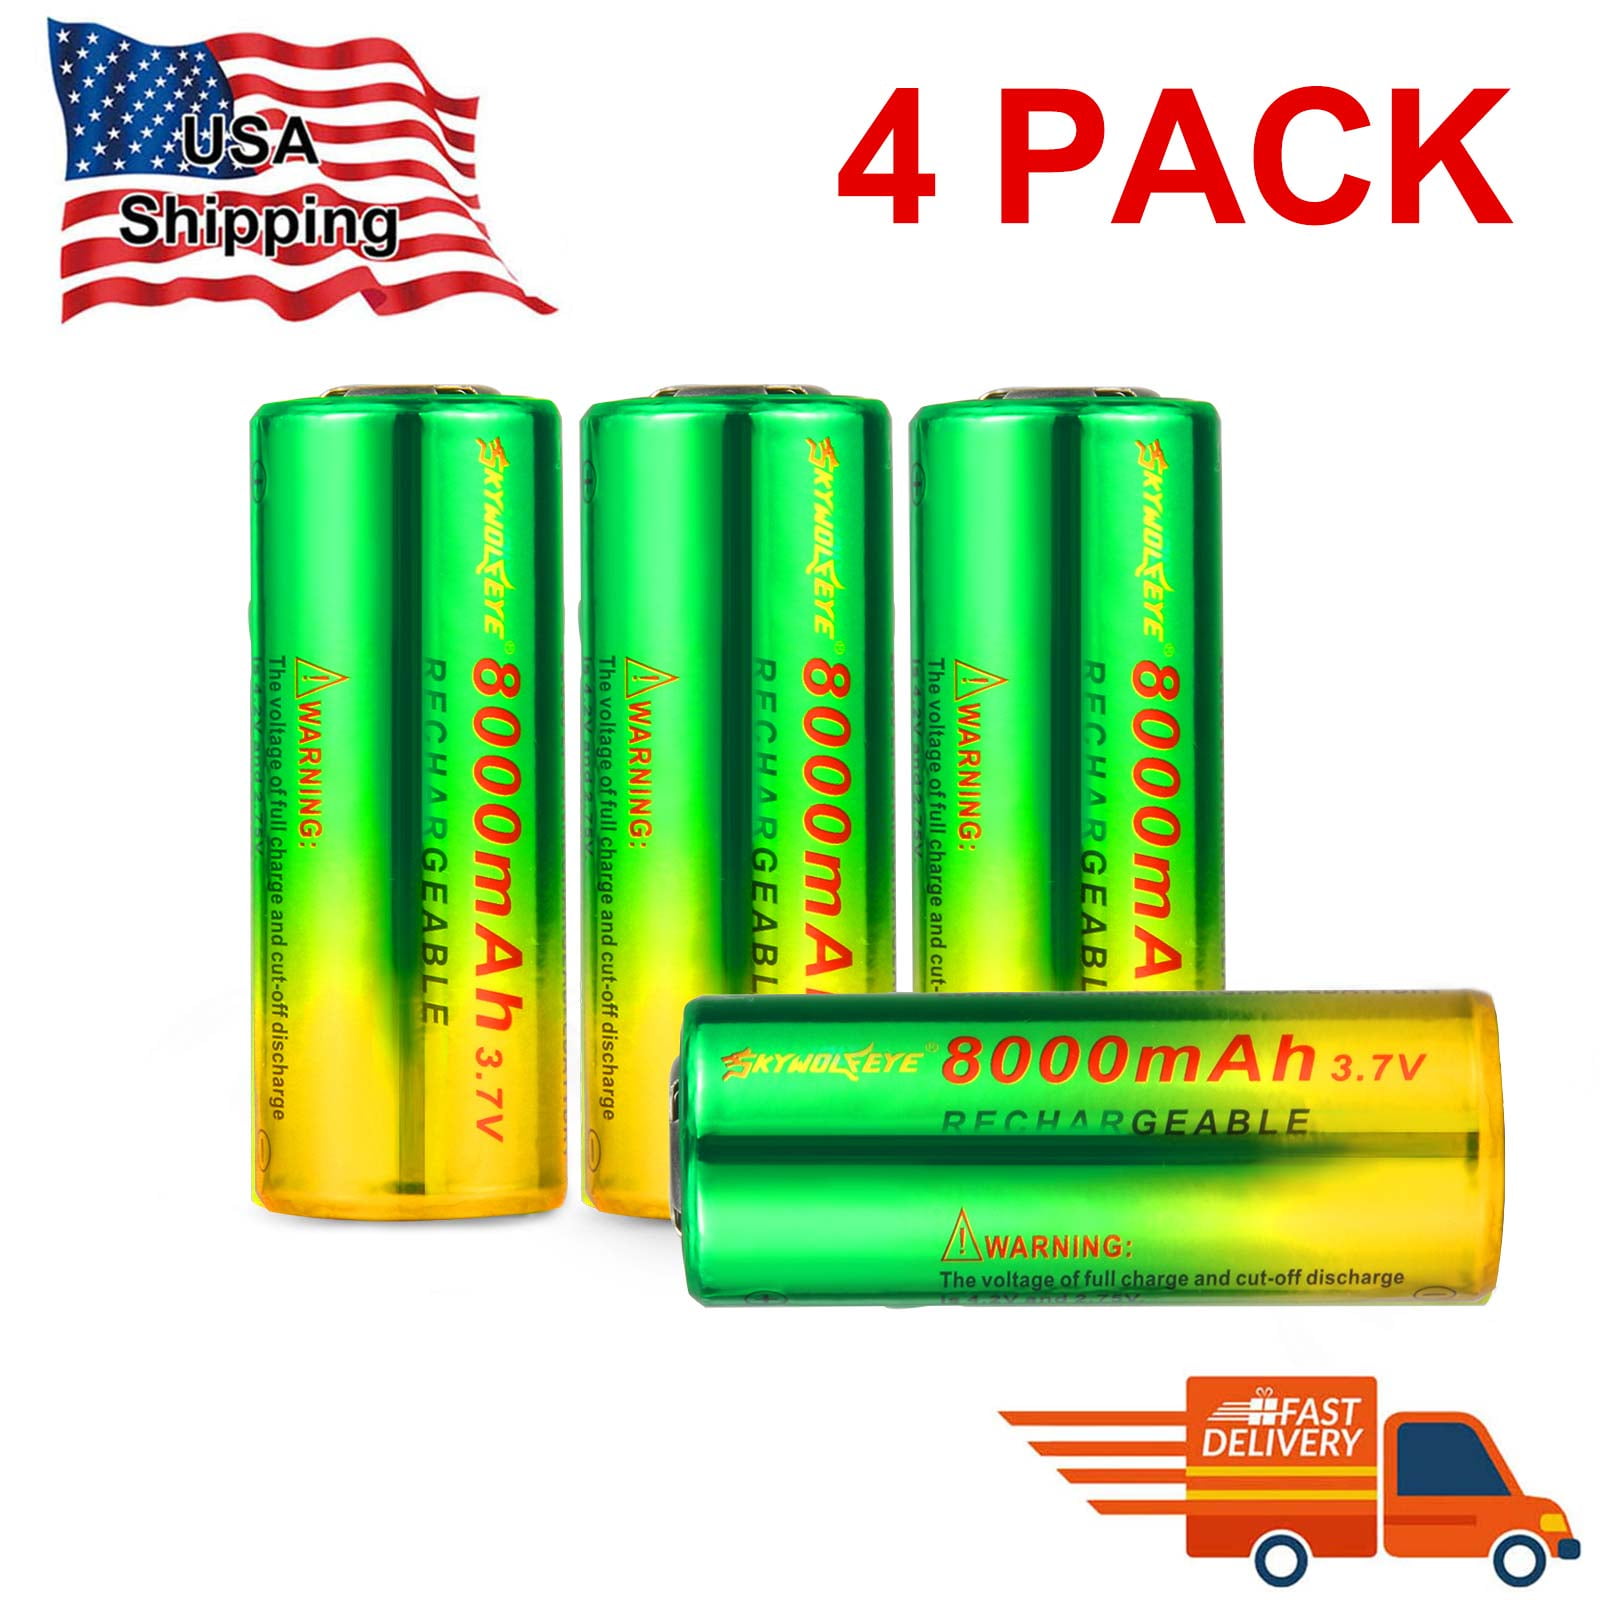 Best 5000mAh INR 26650 Li-ion Rechargeable Batteries – EBLOfficial